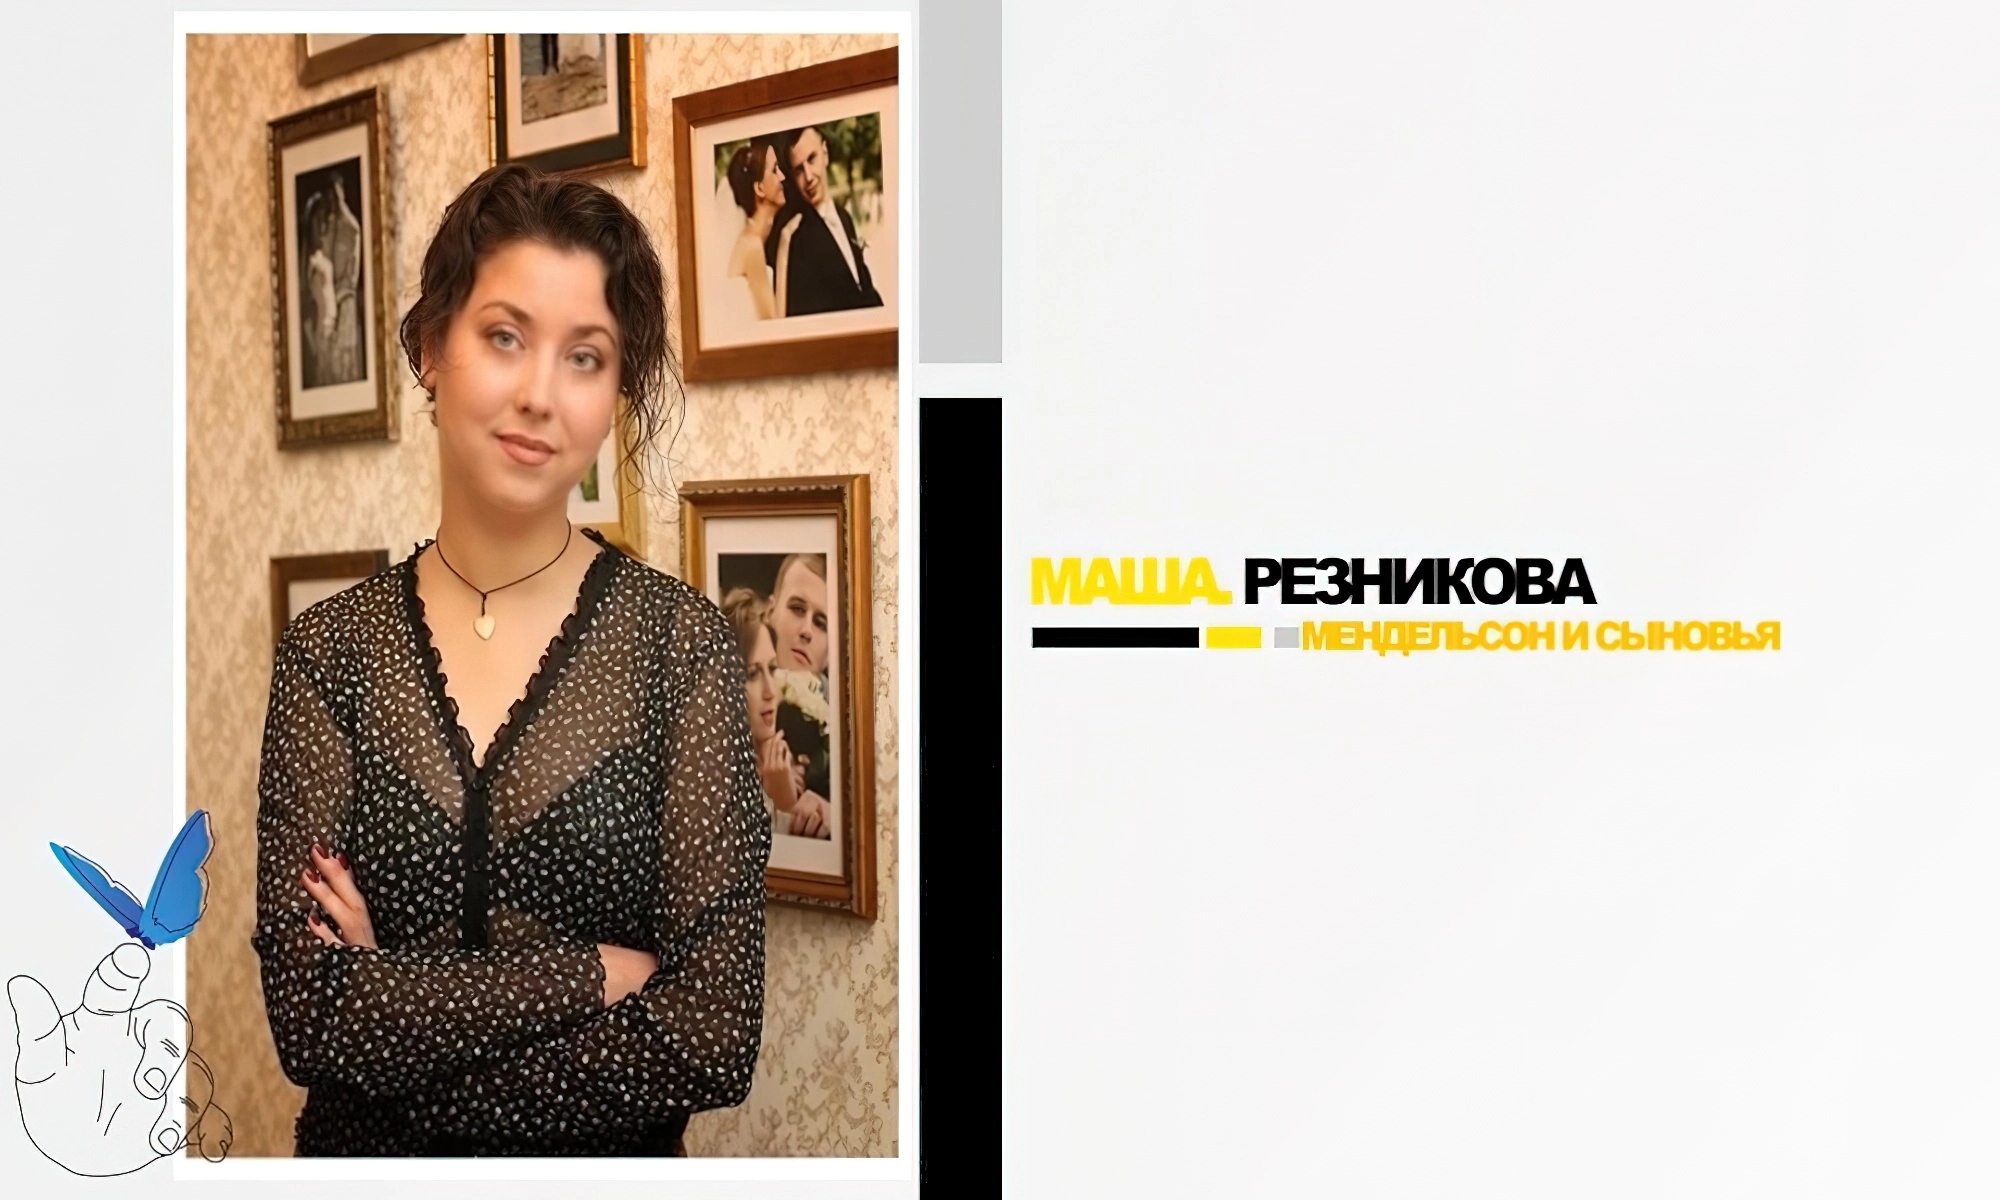 Мария Резникова - владелица и директор свадебного агентства «Мендельсон и сыновья»